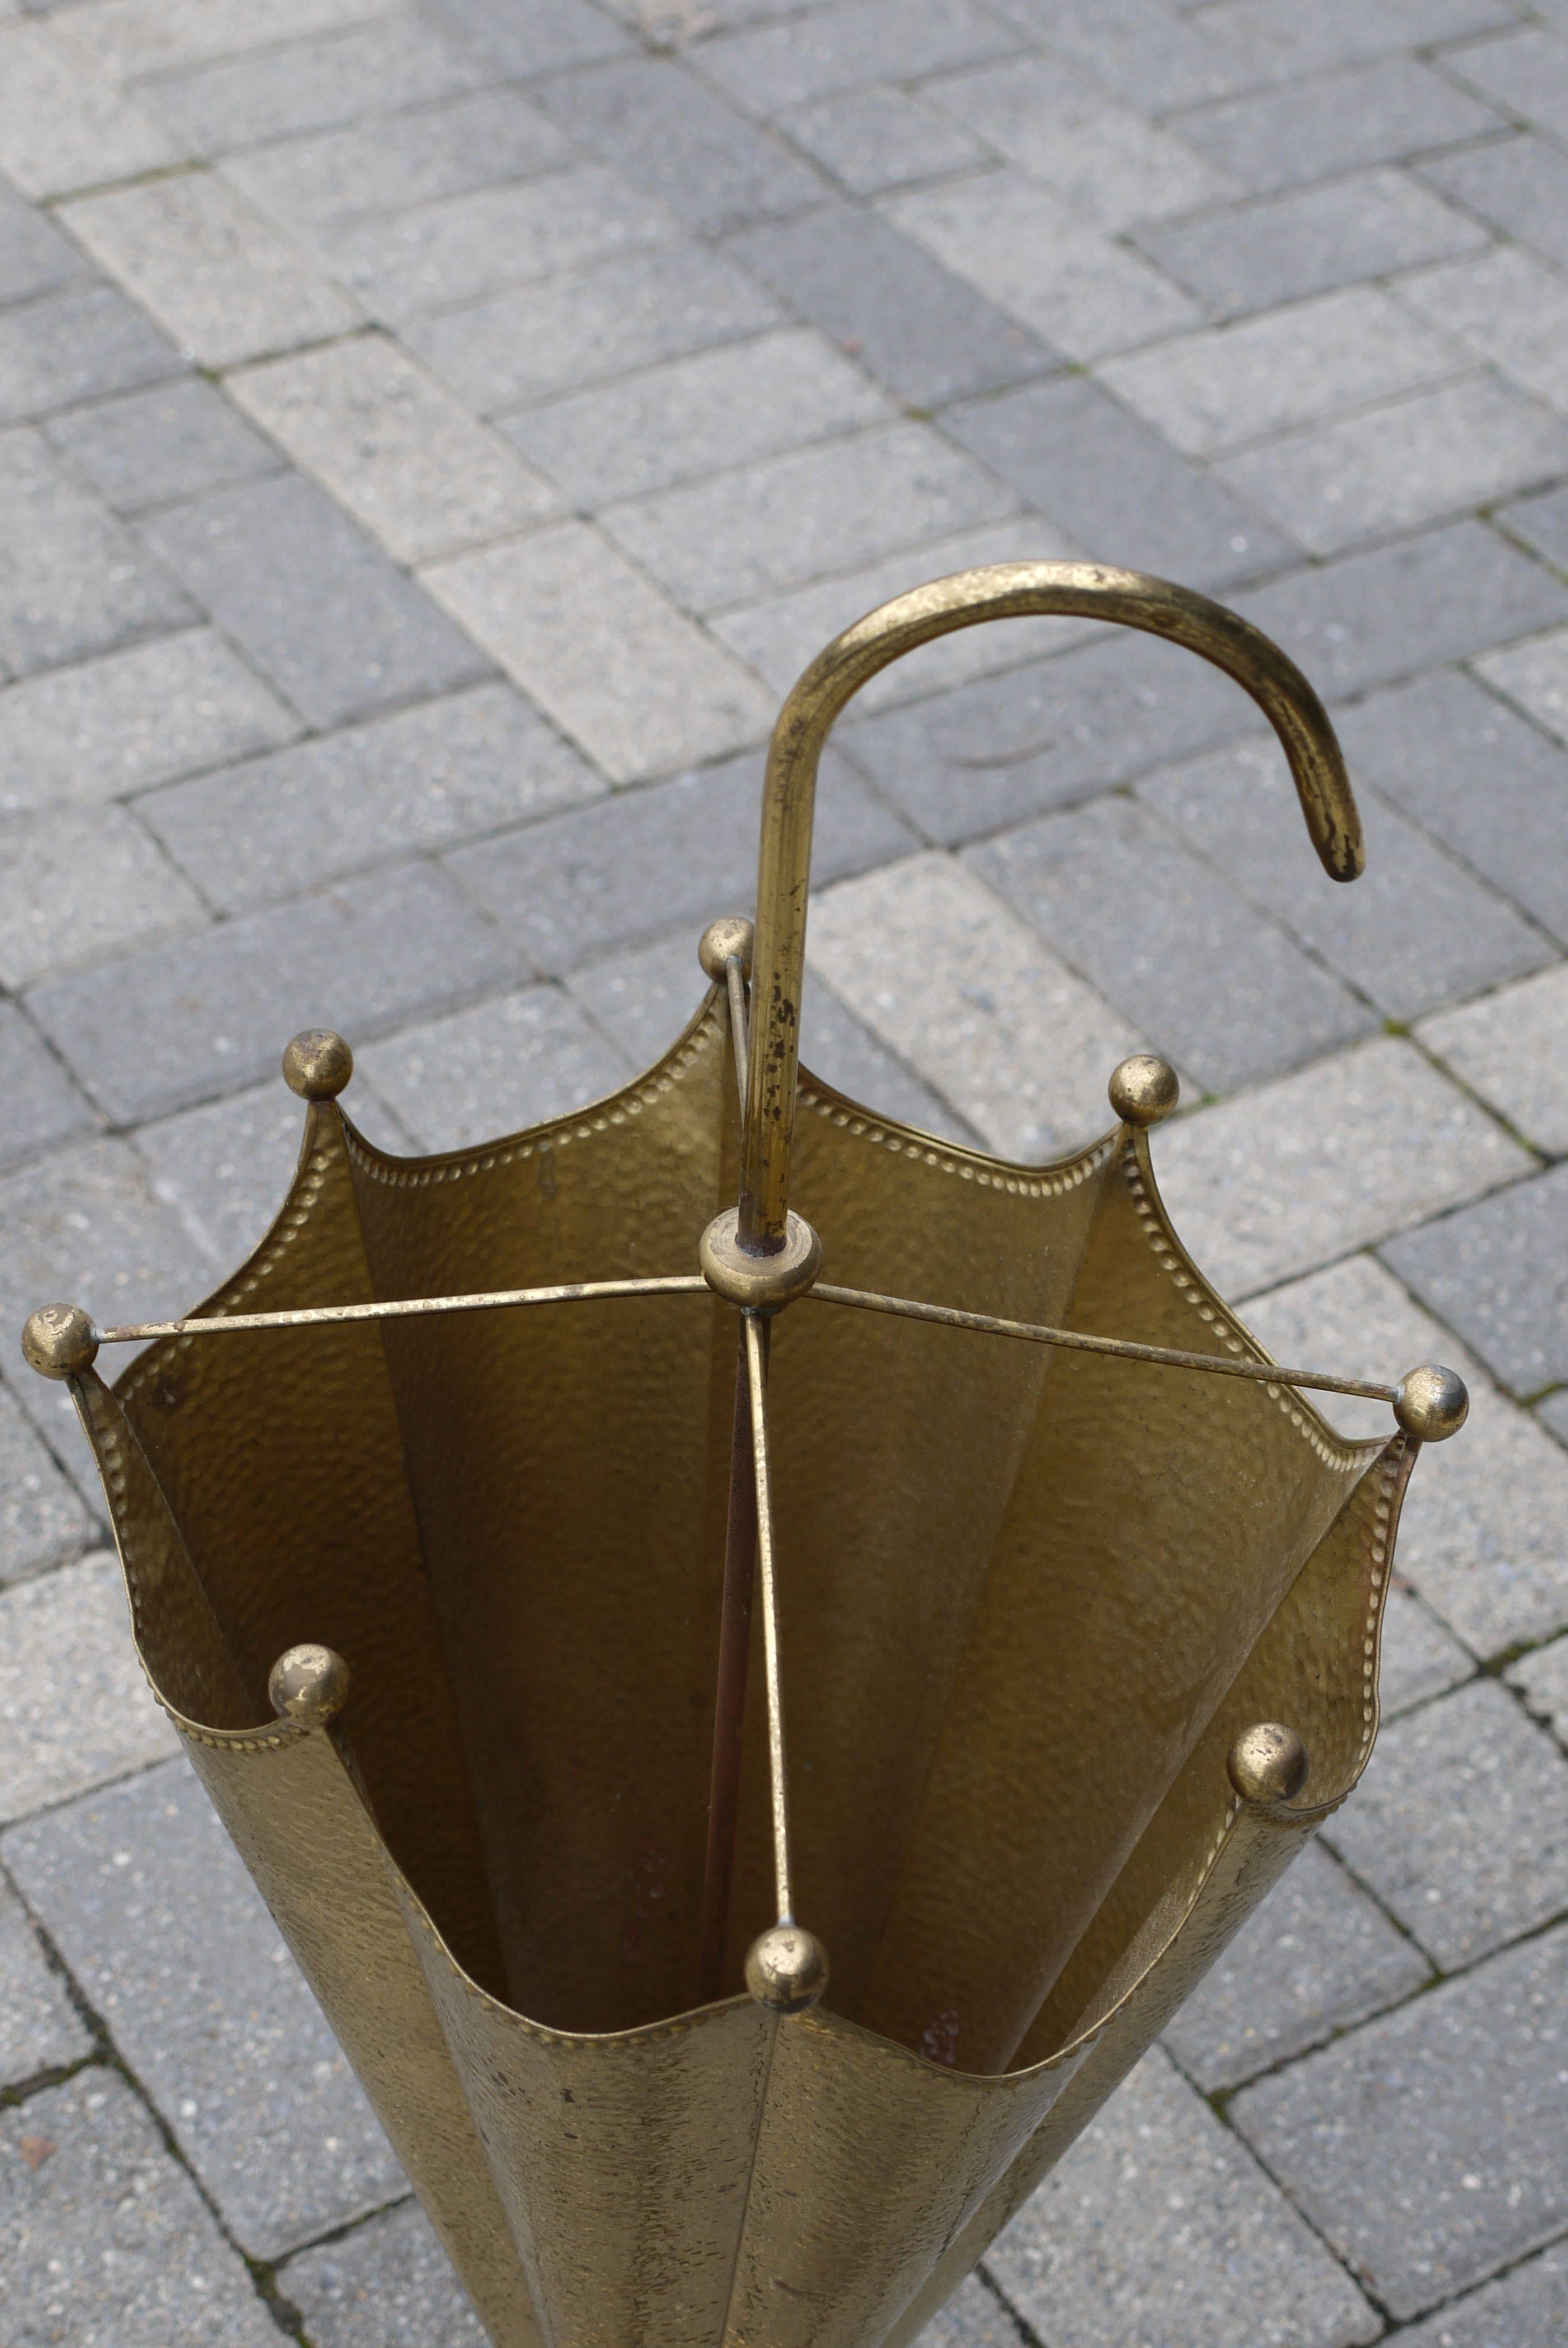 umbrella shaped umbrella holder